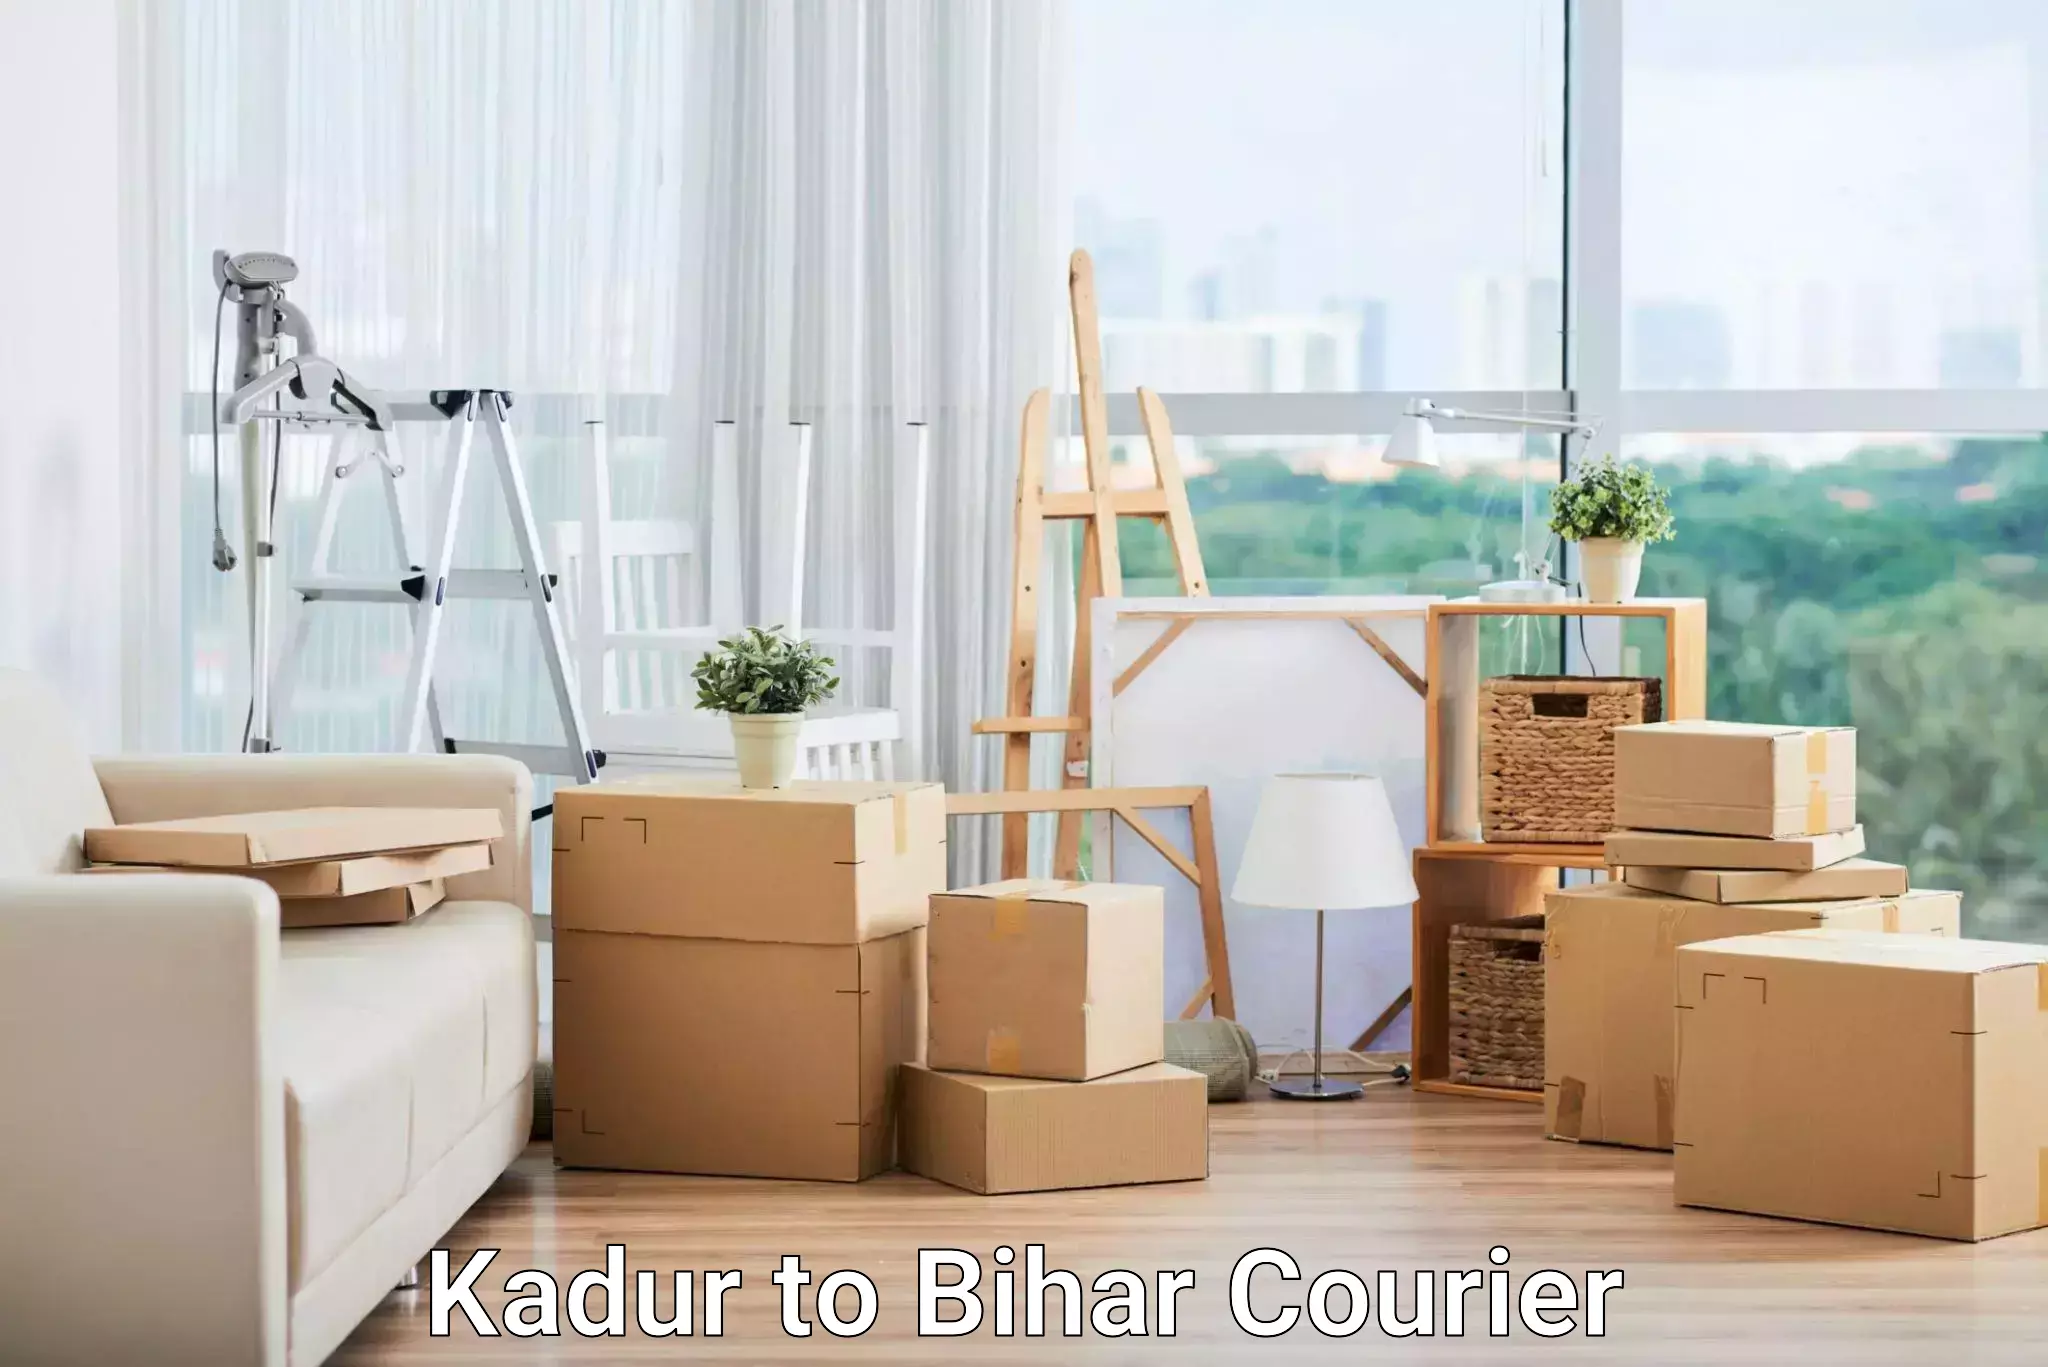 Nationwide parcel services Kadur to Arrah